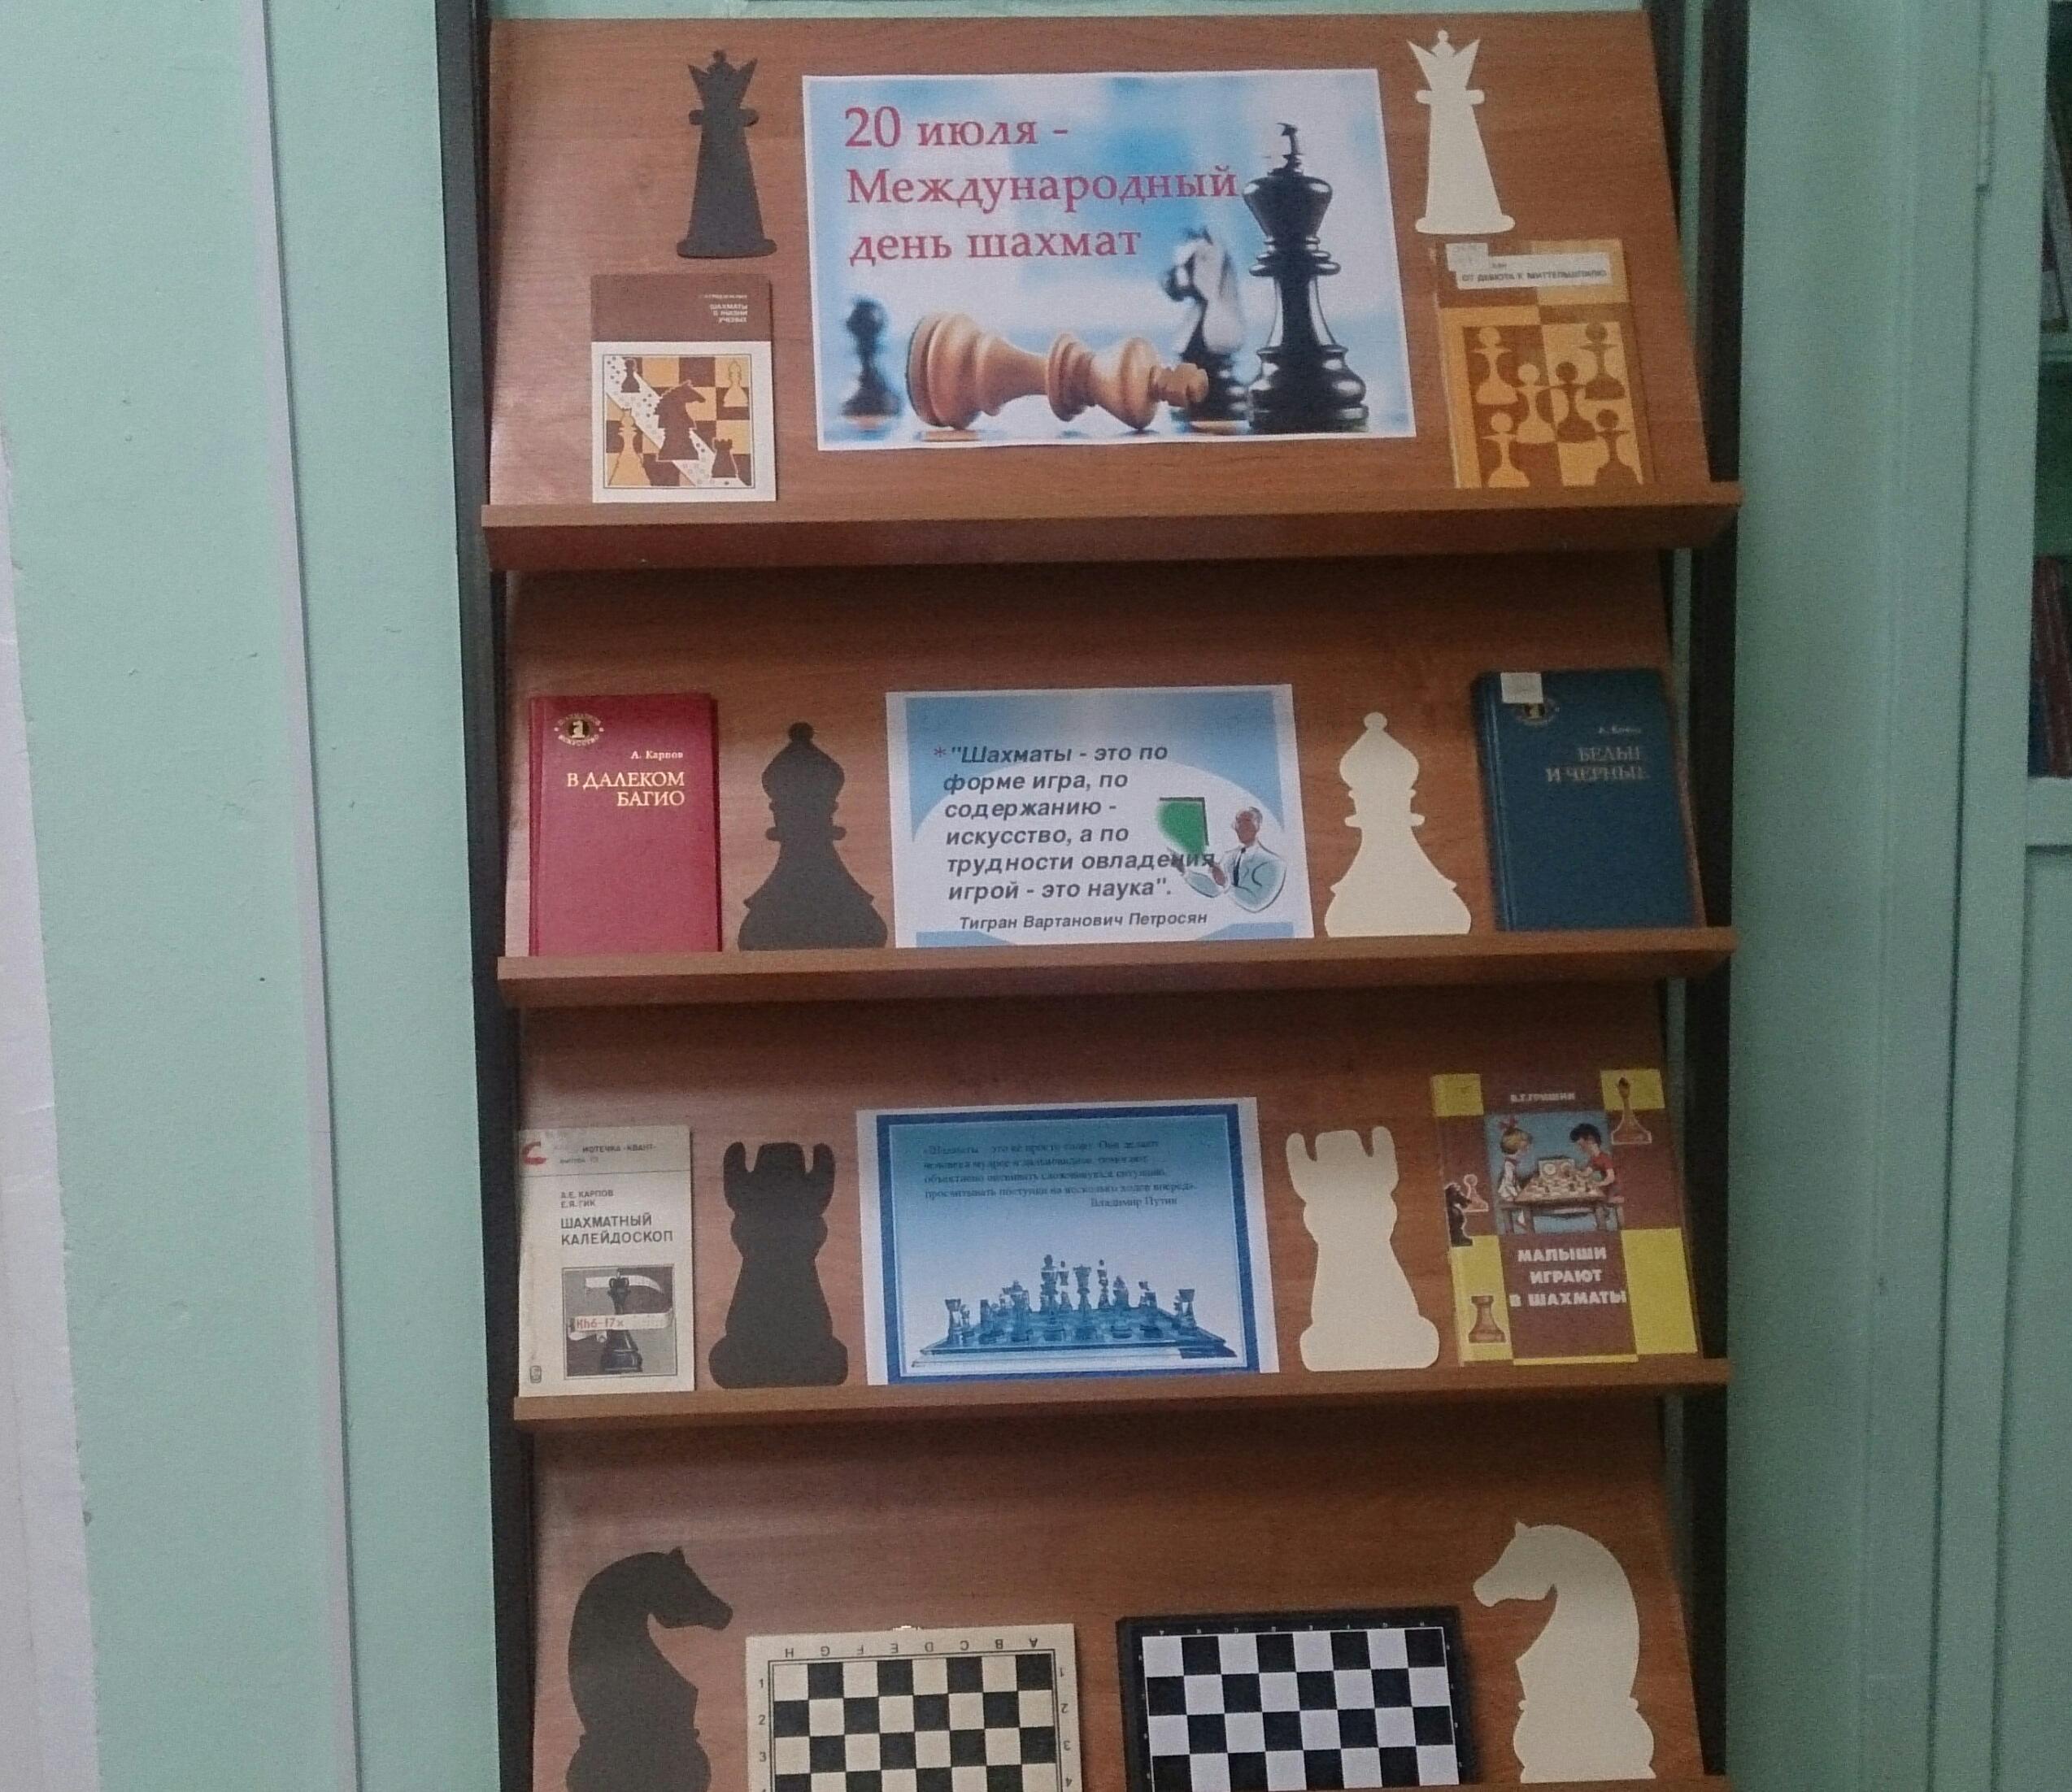 Познавательное мероприятие в библиотеке. Выставка к Дню шахмат в библиотеке. Название книжной выставки о шахматах. День шахмат в библиотеке мероприятия. Книжная выставка к Дню шахмат в библиотеке.